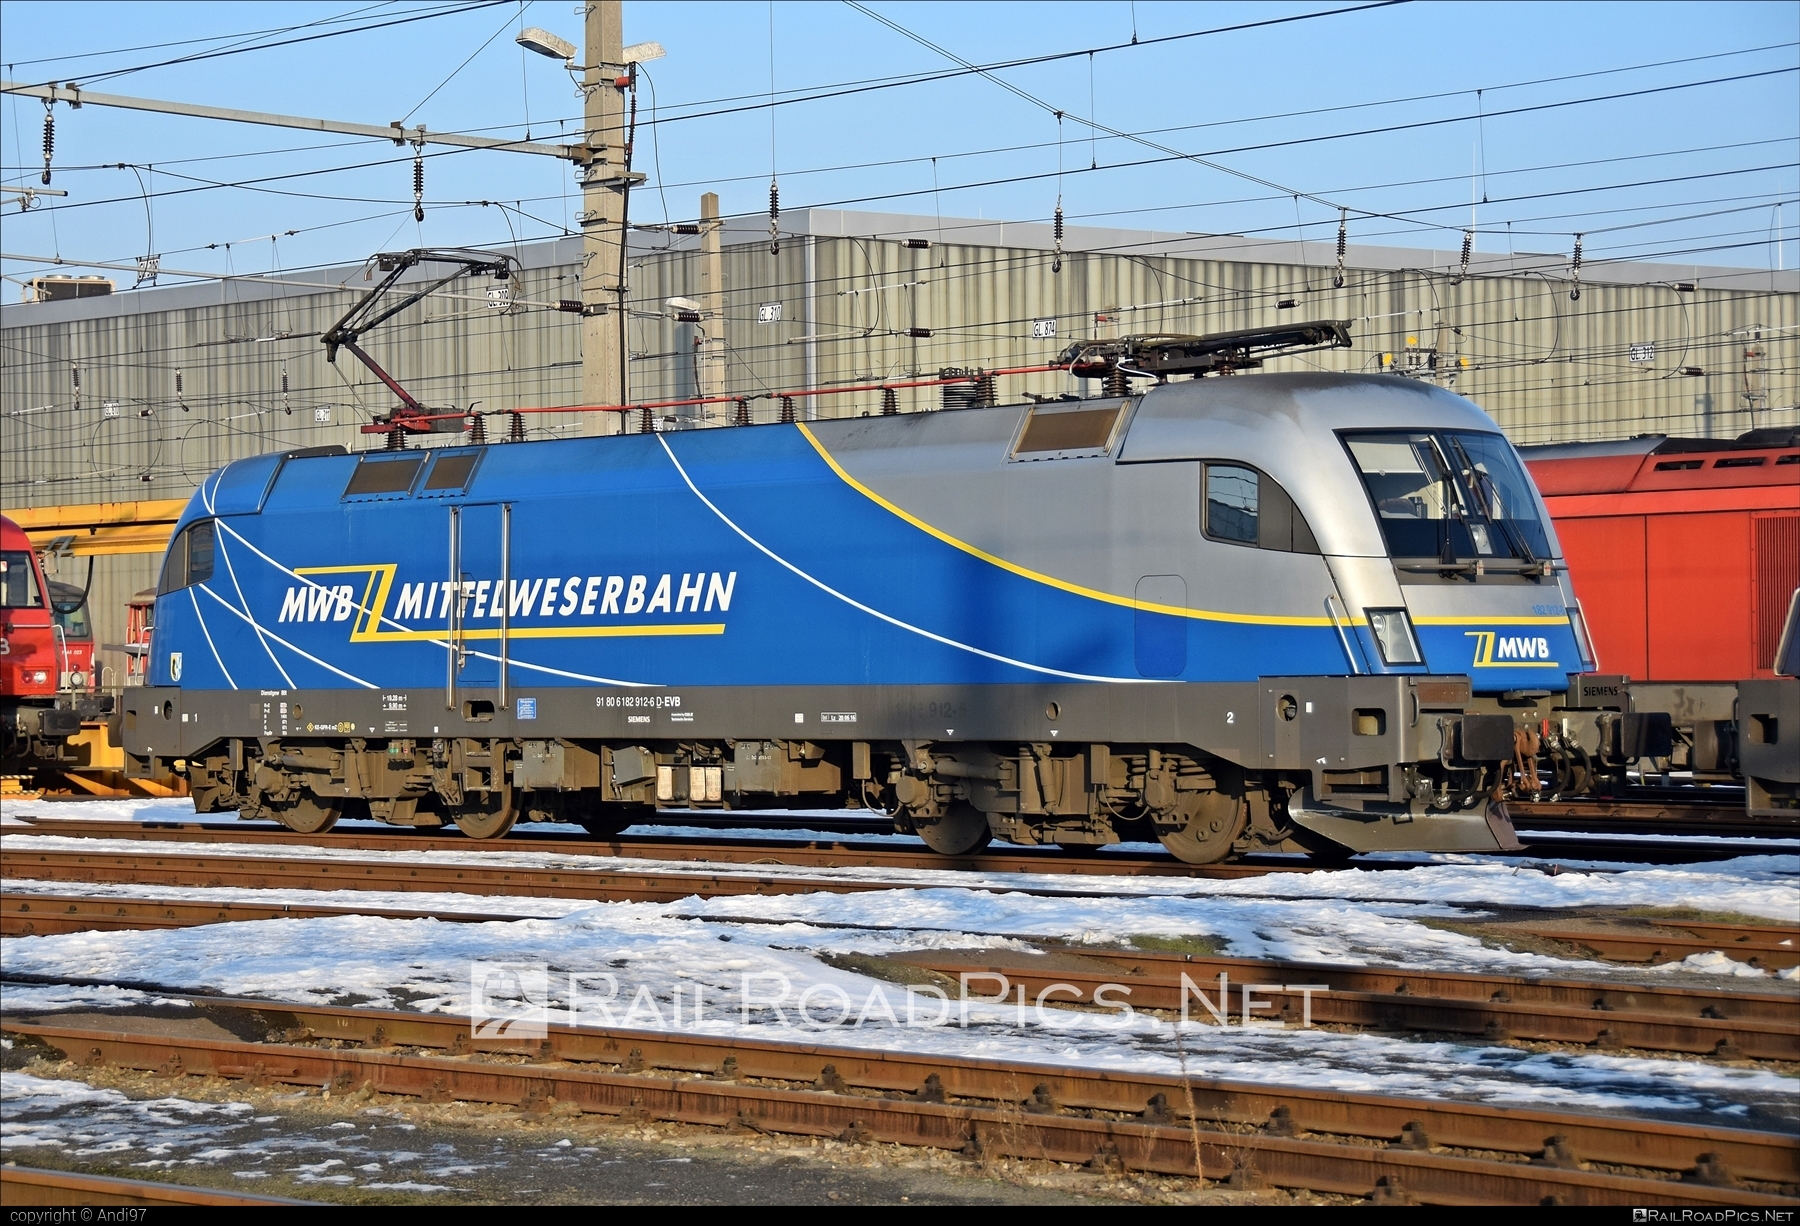 Siemens ES 64 U2 - 182 912 operated by Eisenbahnen und Verkehrsbetriebe Elbe-Weser #es64 #es64u2 #eurosprinter #evb #siemens #siemensEs64 #siemensEs64u2 #siemenstaurus #taurus #tauruslocomotive